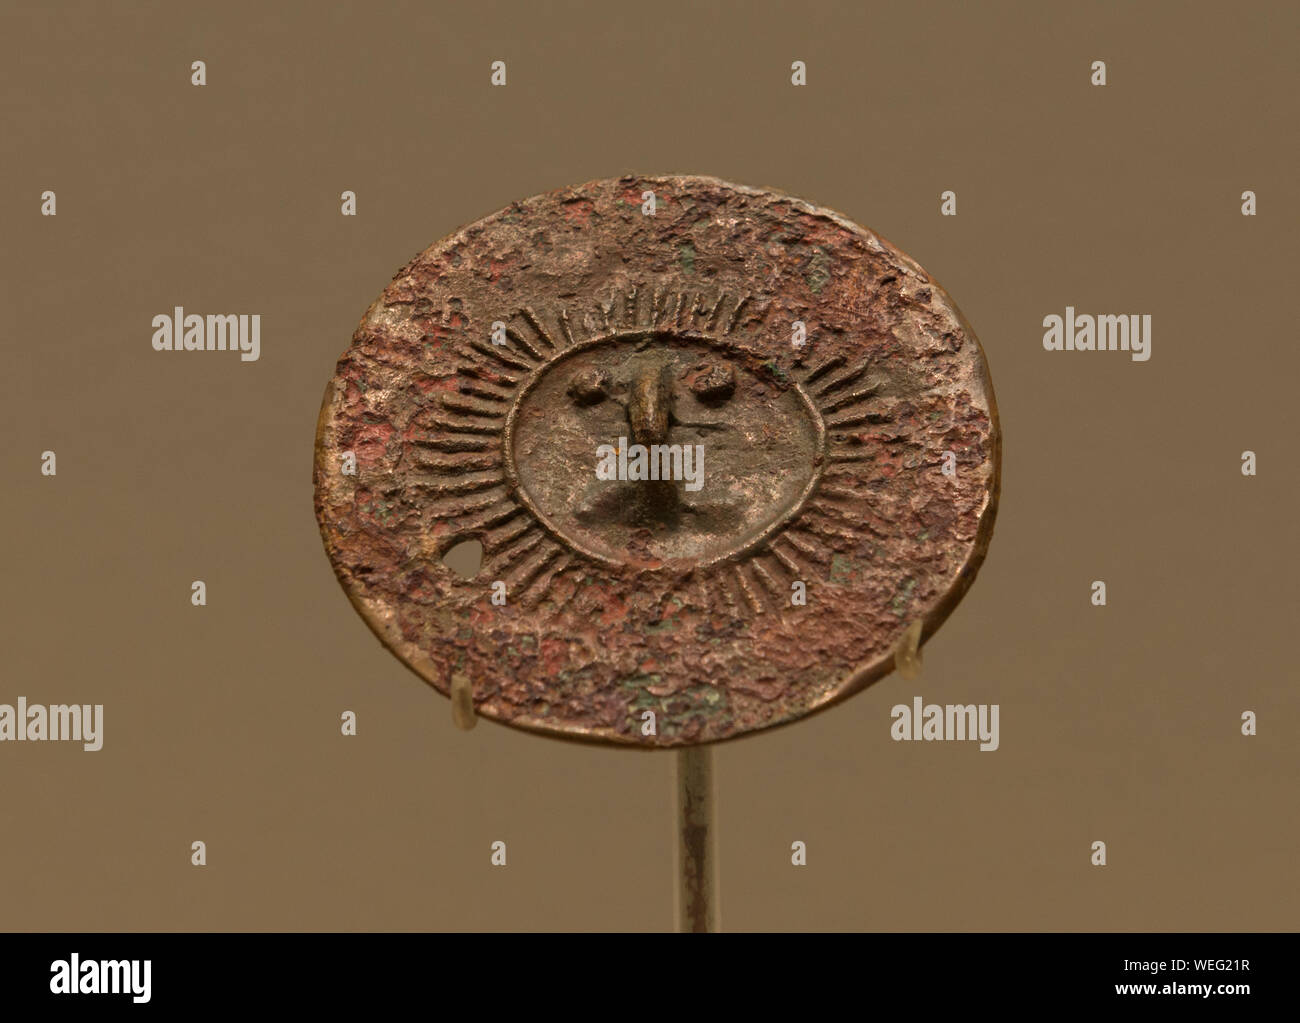 Le visage humain et motif soleil miroir en bronze. 3800 - 3600 il y a des années. Le Musée de la région autonome Uygur du Xinjiang. Banque D'Images